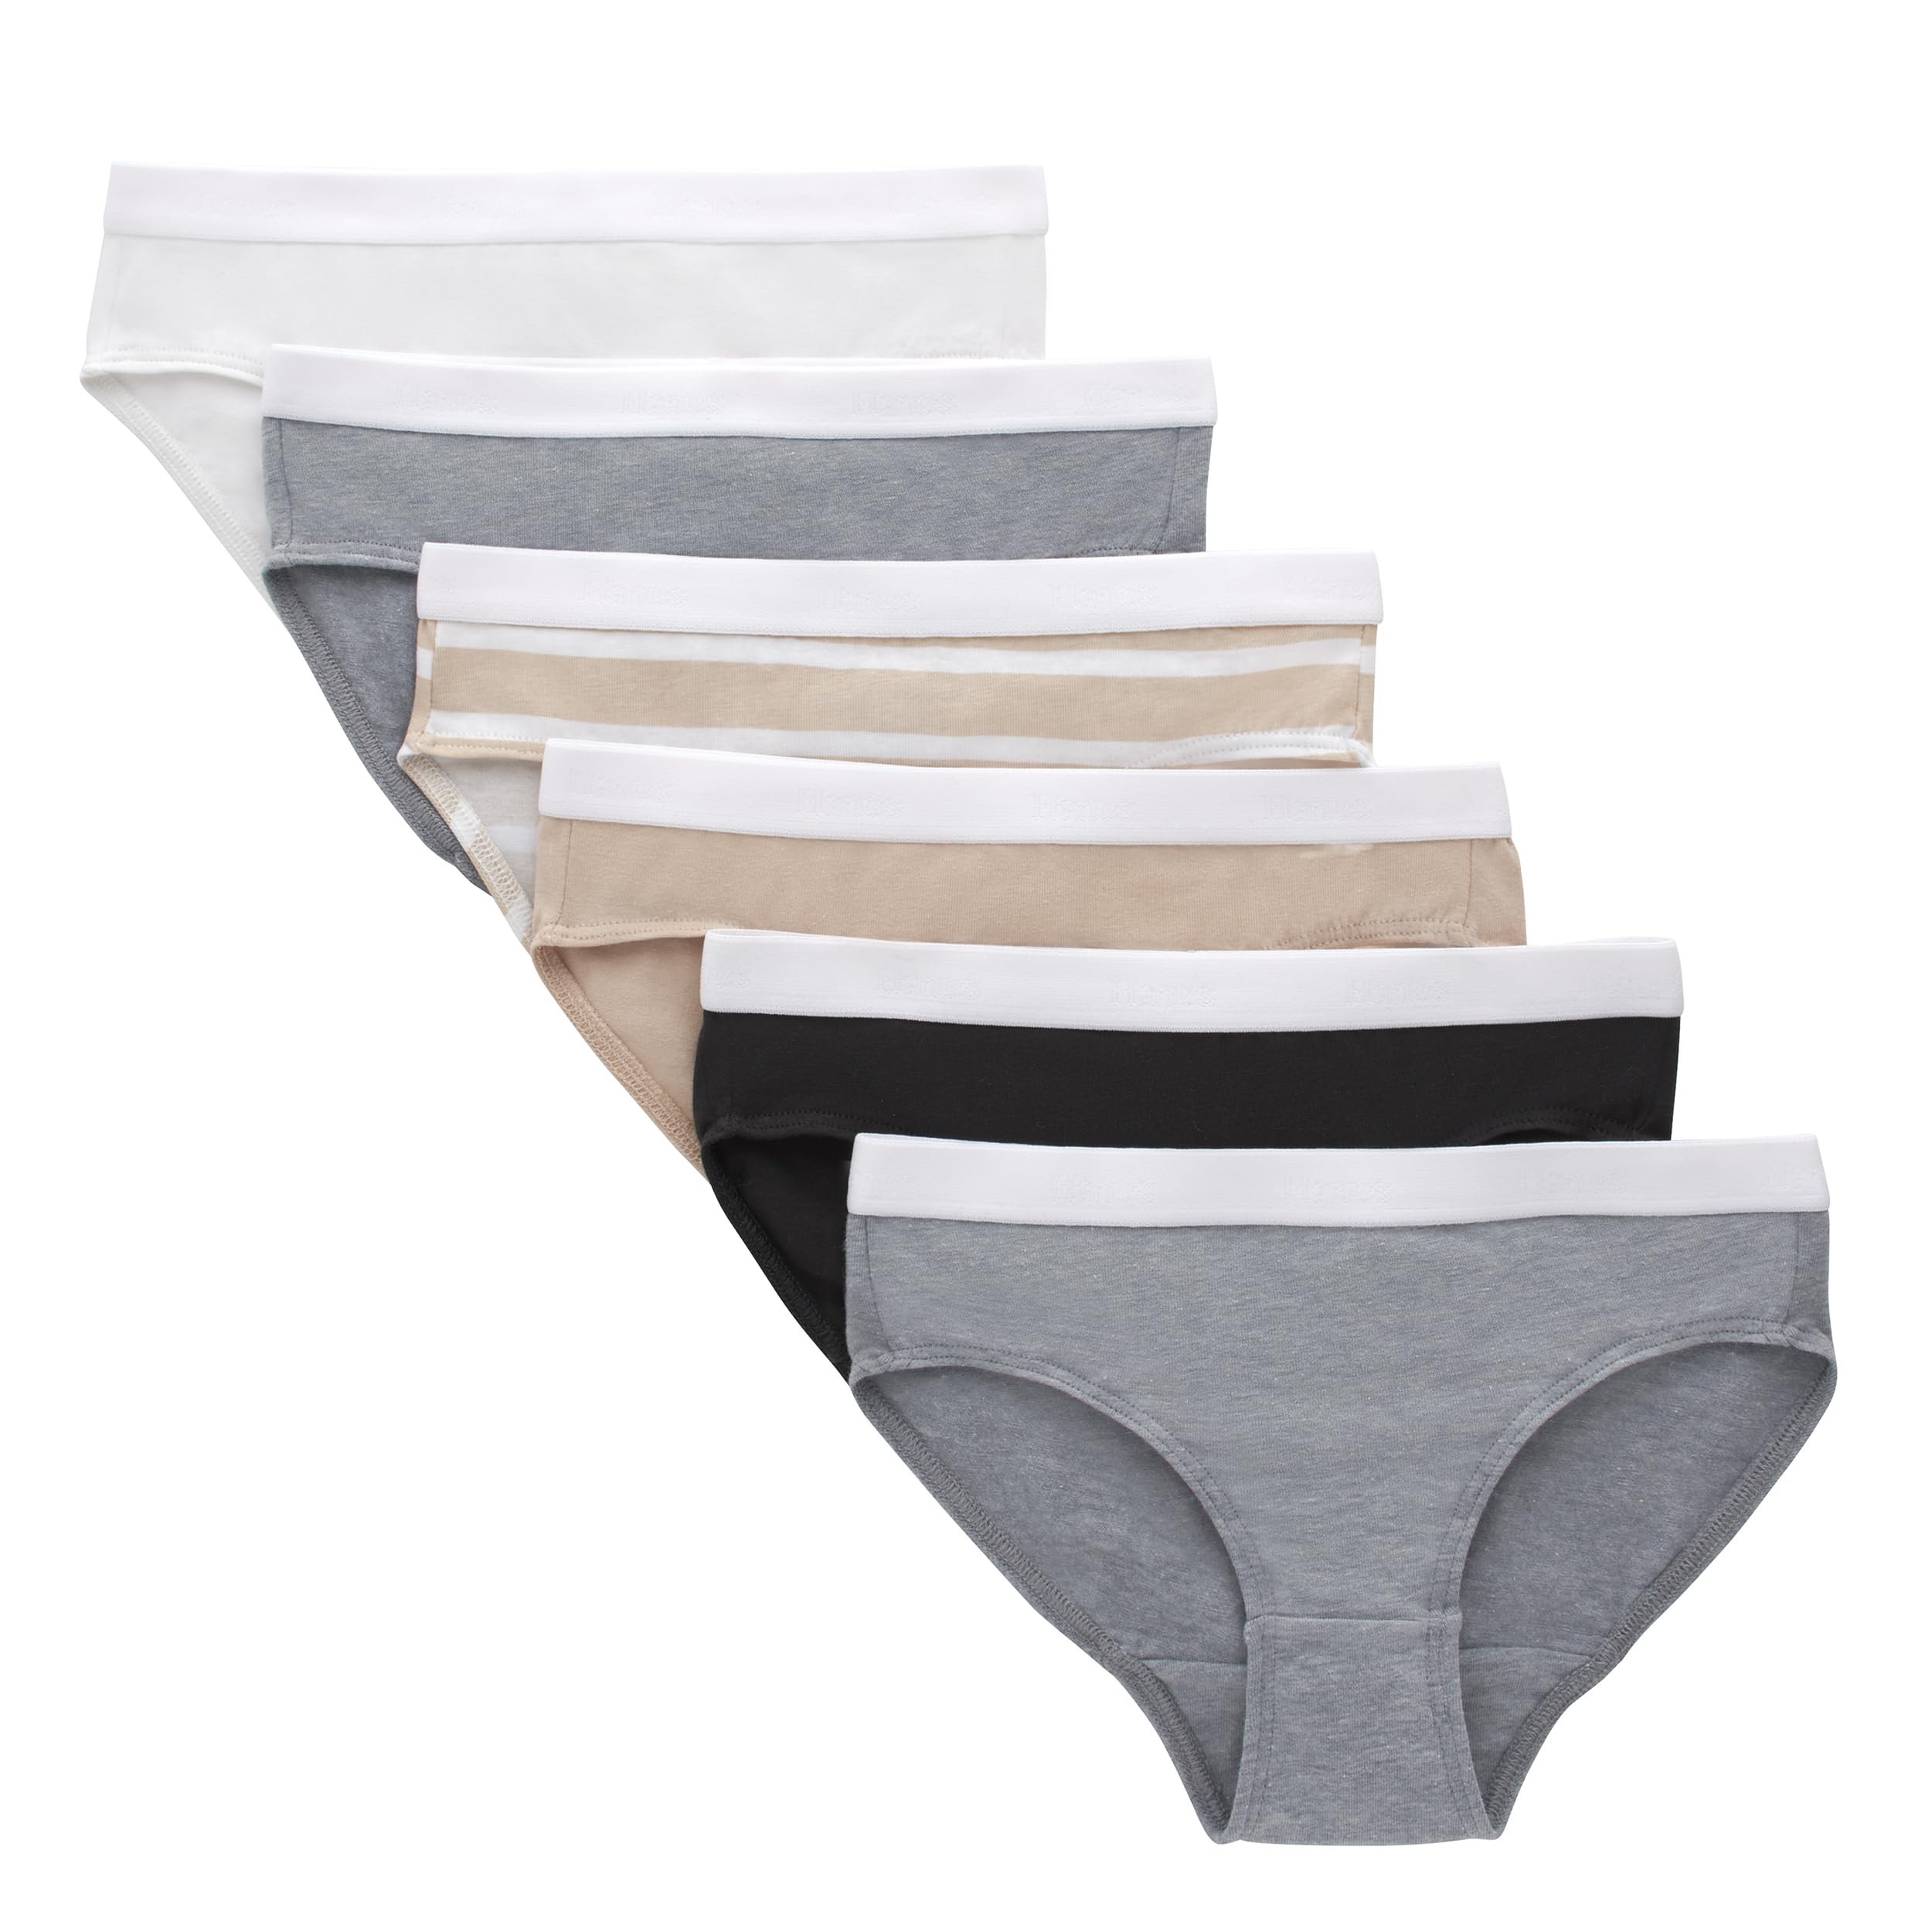 Hanes Tween Girls' Originals Underwear, Boyshort and Hipster Stretch Cotton, 6-Pack